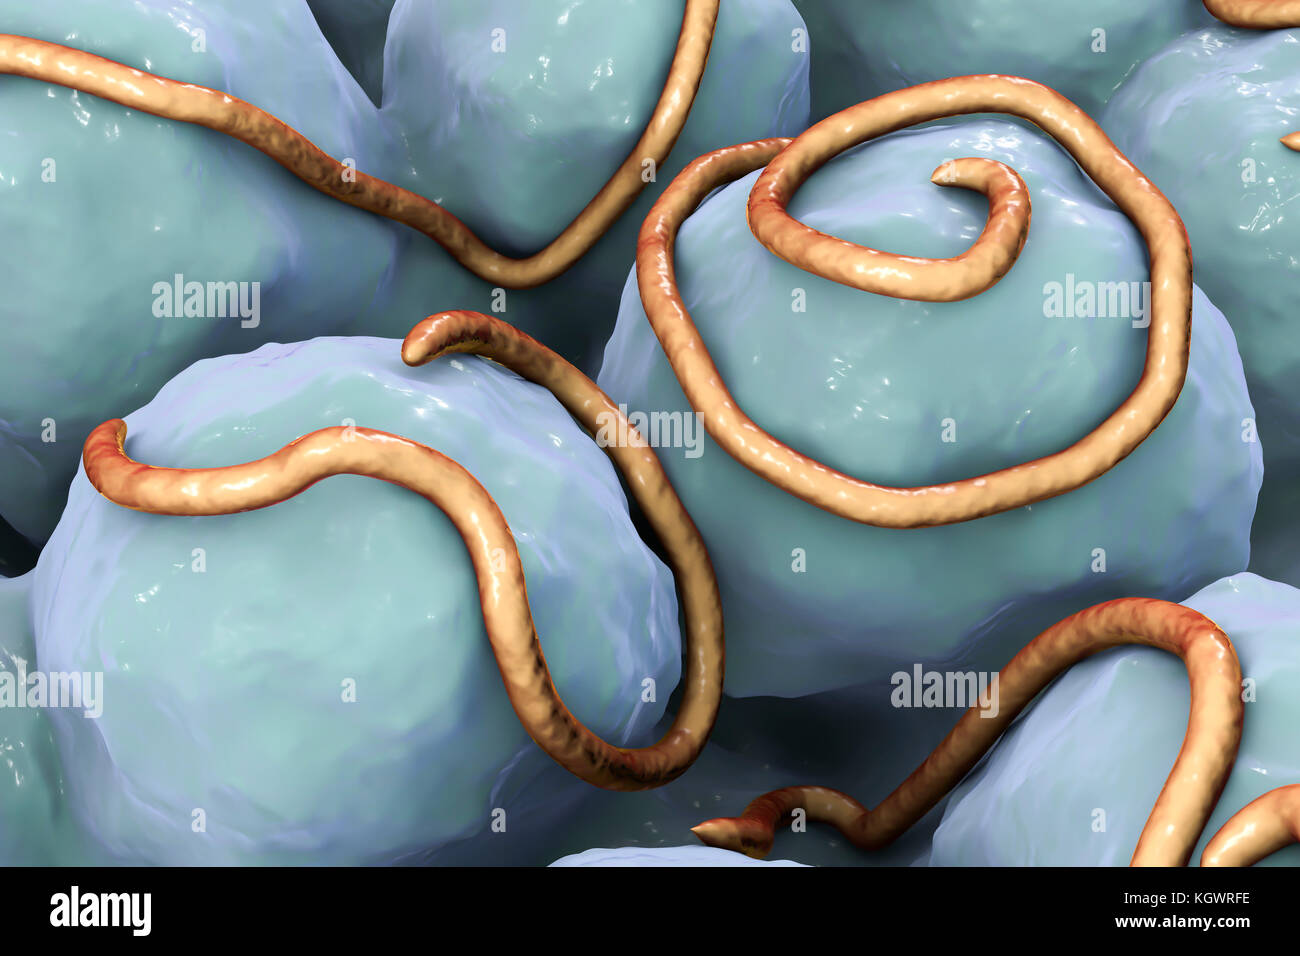 Fadenwürmer im Darm. Computer zeigt mehrere Fadenwürmer (Enterobius sp.) im Innenraum eines menschlichen Darm. Fadenwürmer Nematoden sind Würmer, der große Darm und Caecum von vielen Tieren schmarotzen. Beim Menschen die gemeinsamen Infektion enterobiasis verursachen. Nematoden sind nicht segmentierten Würmer, Parasiten oder frei sein - Leben je nach Art. Stockfoto